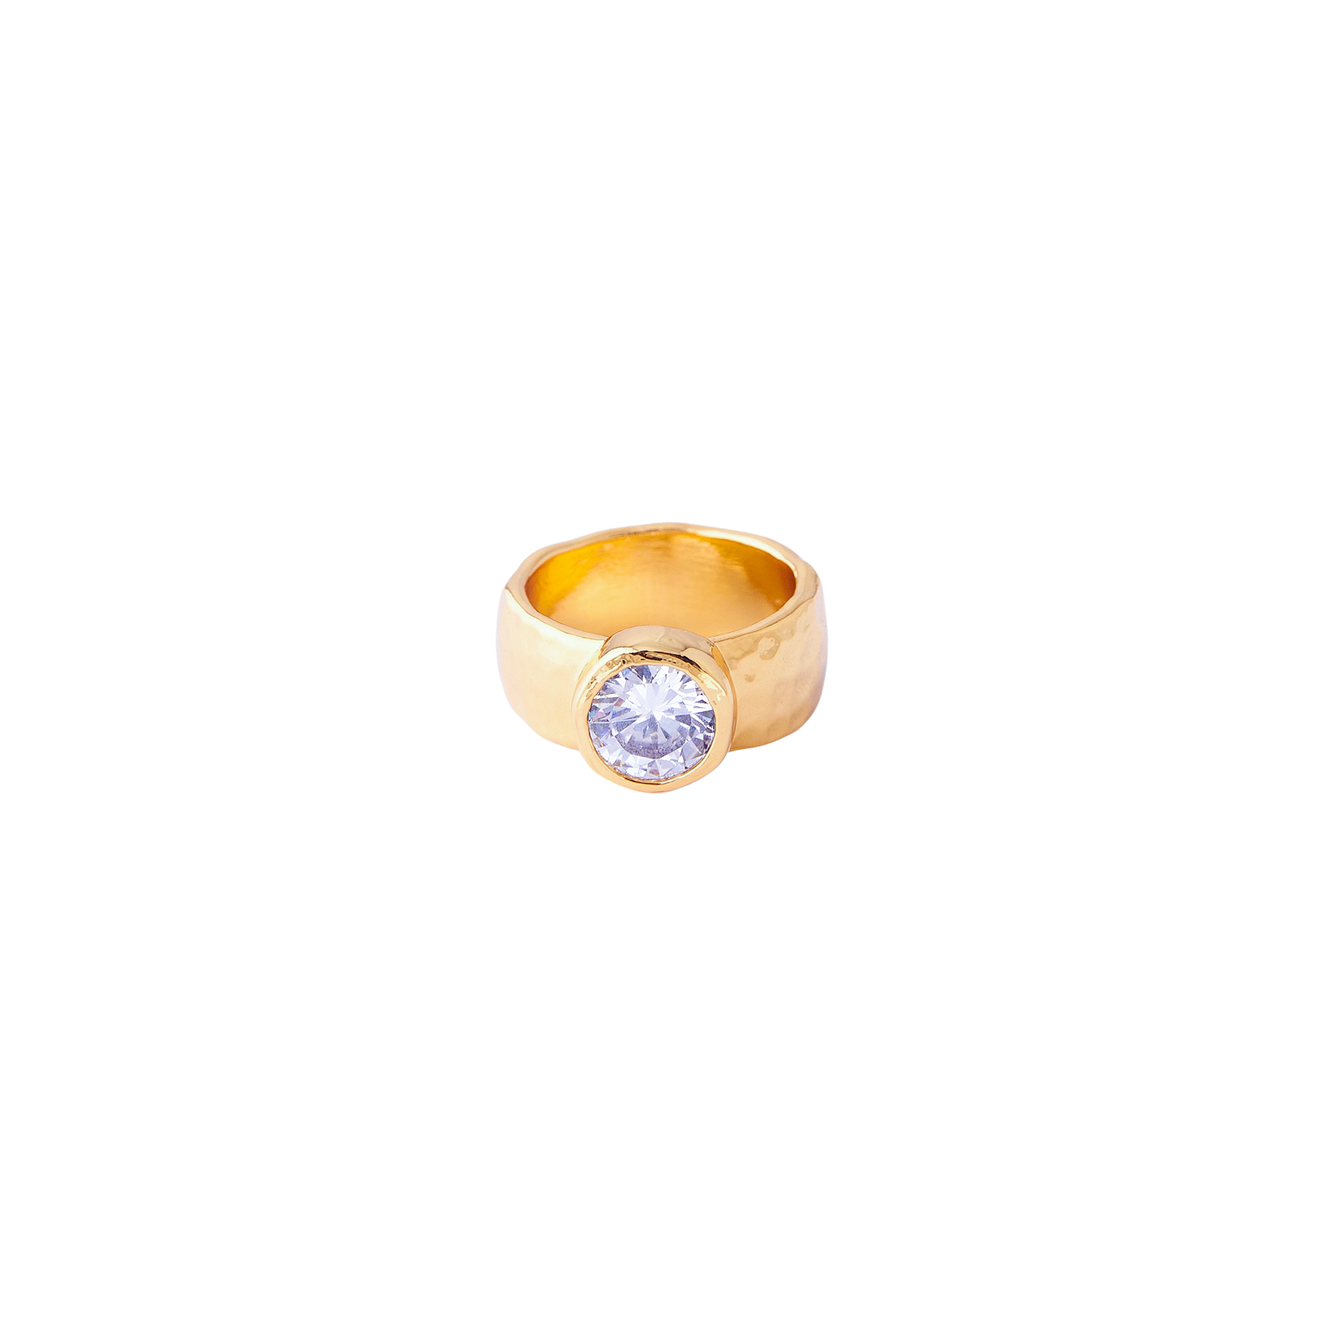 Herald Percy Золотистое кольцо с крупным кристаллом herald percy золотистое фигурное кольцо с зеленым сердцем